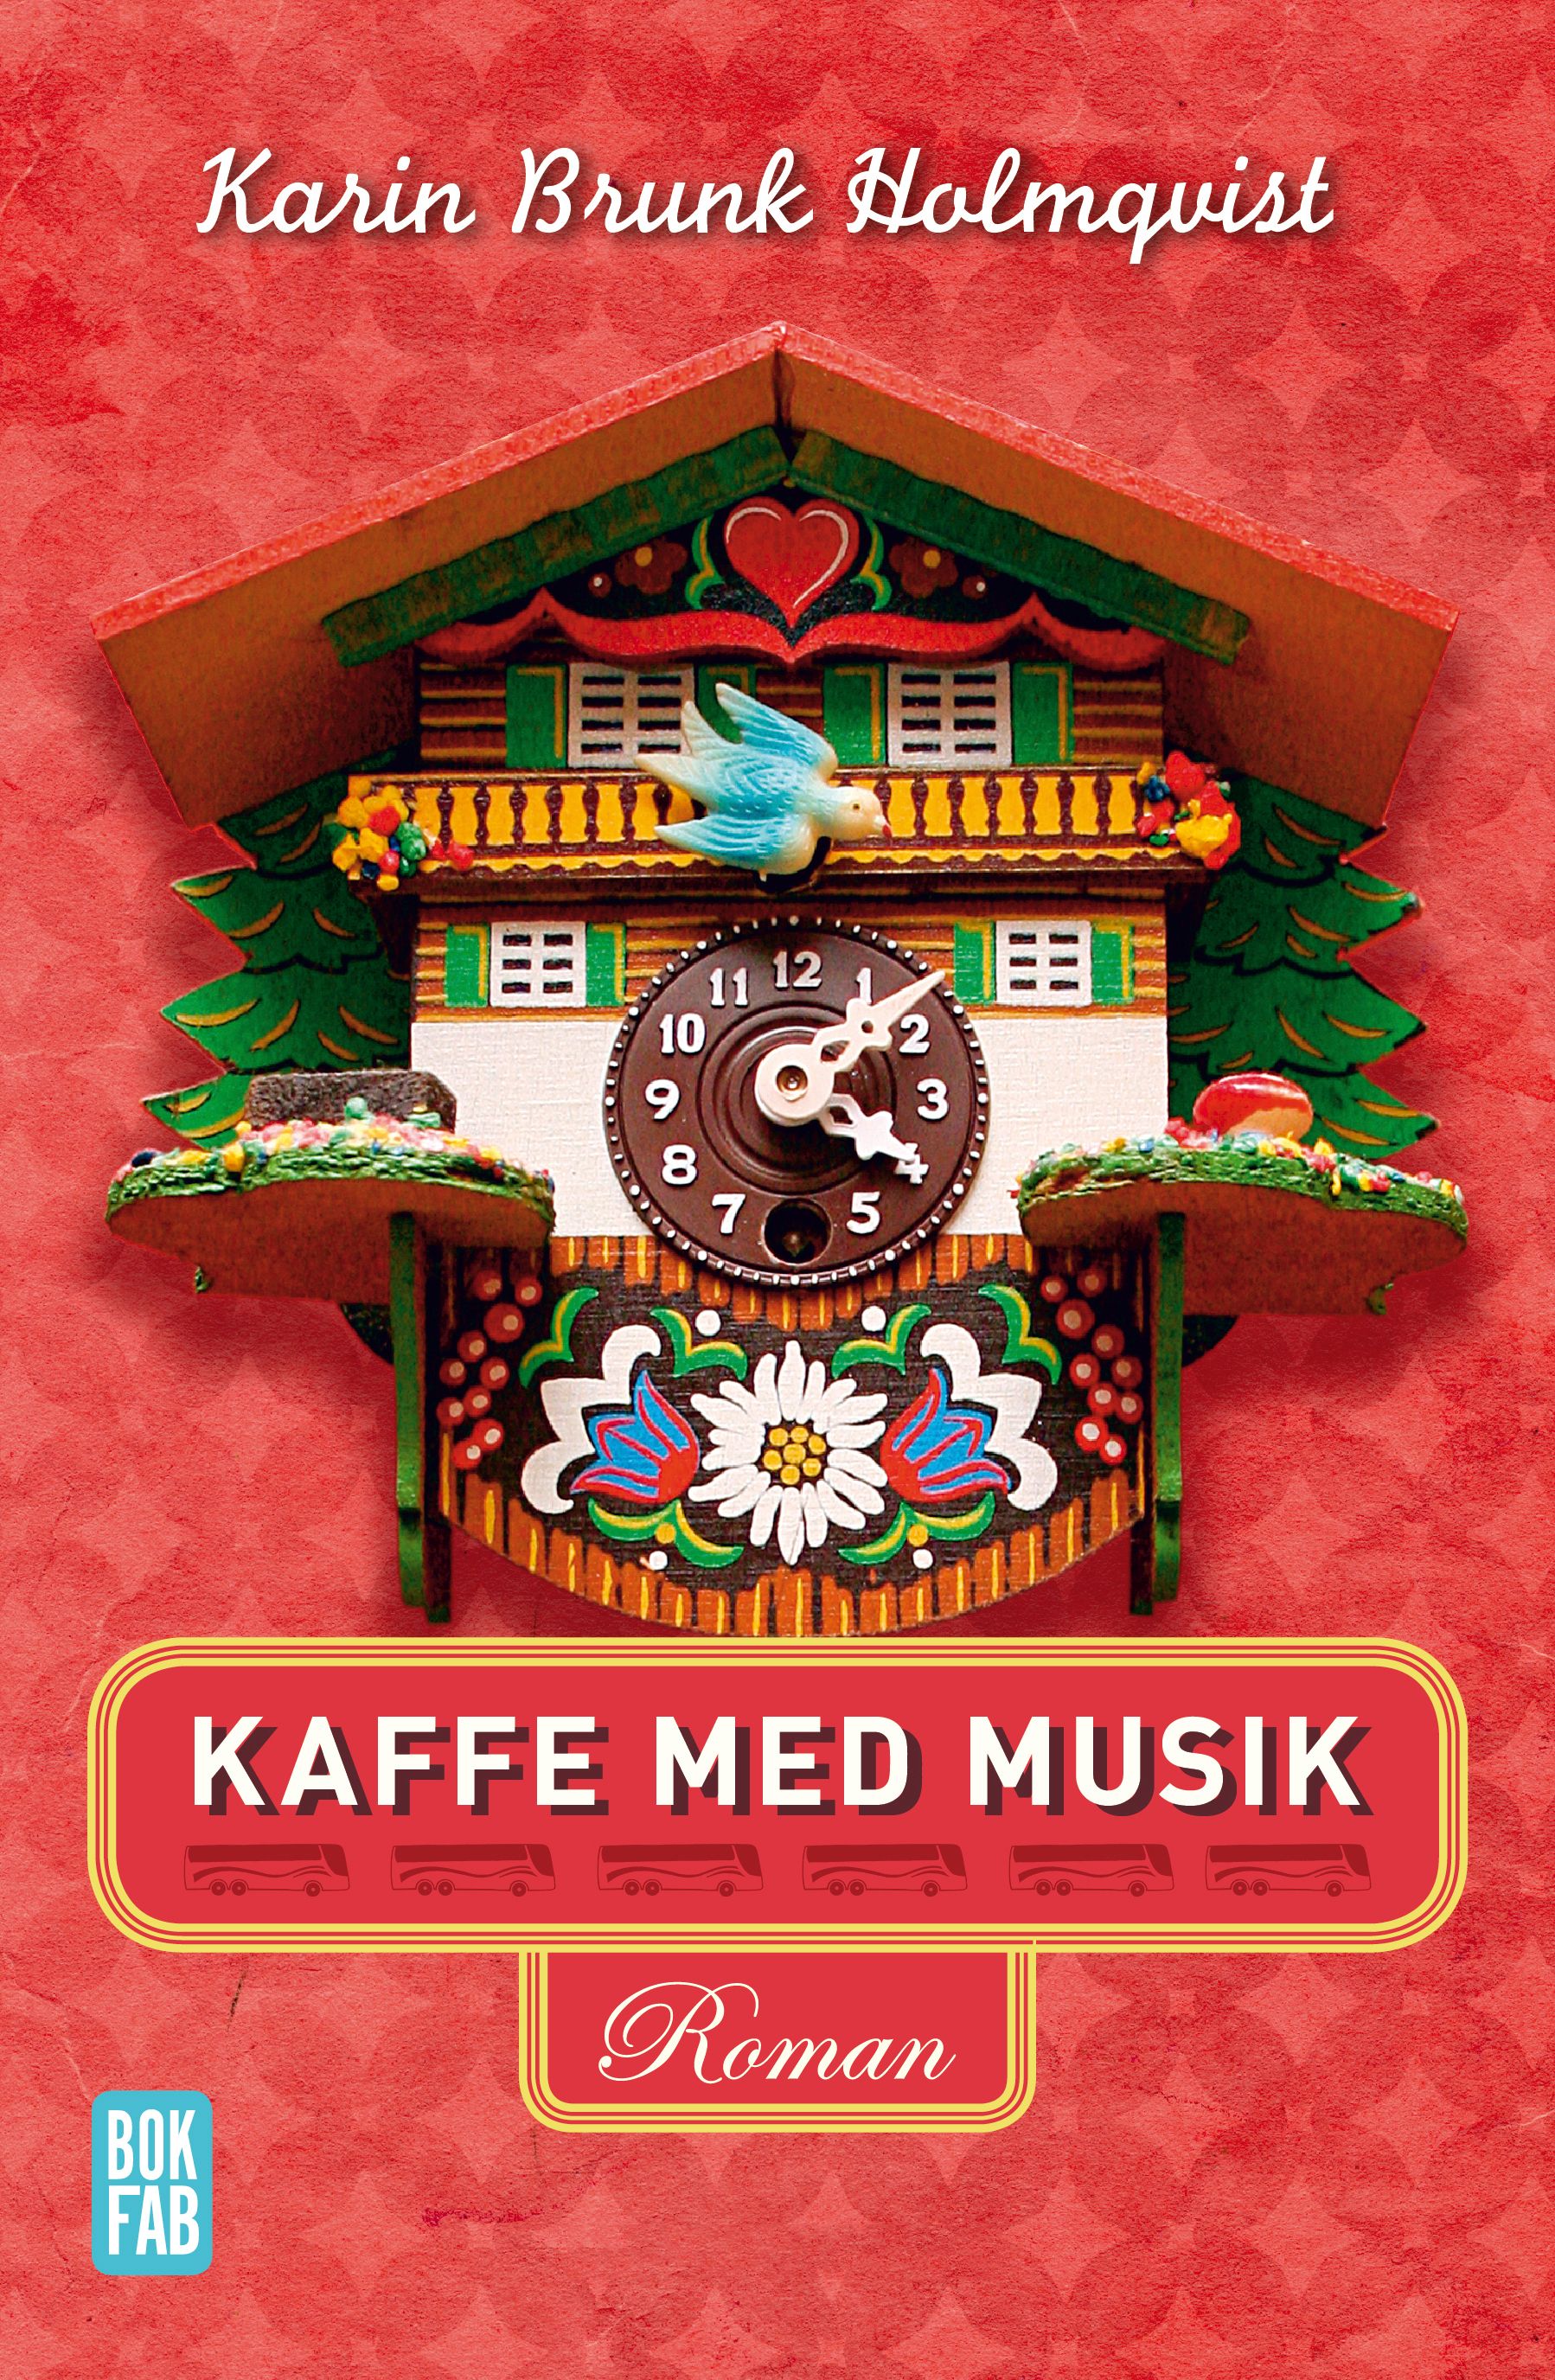 Kaffe med musik, eBook by Karin Brunk Holmqvist